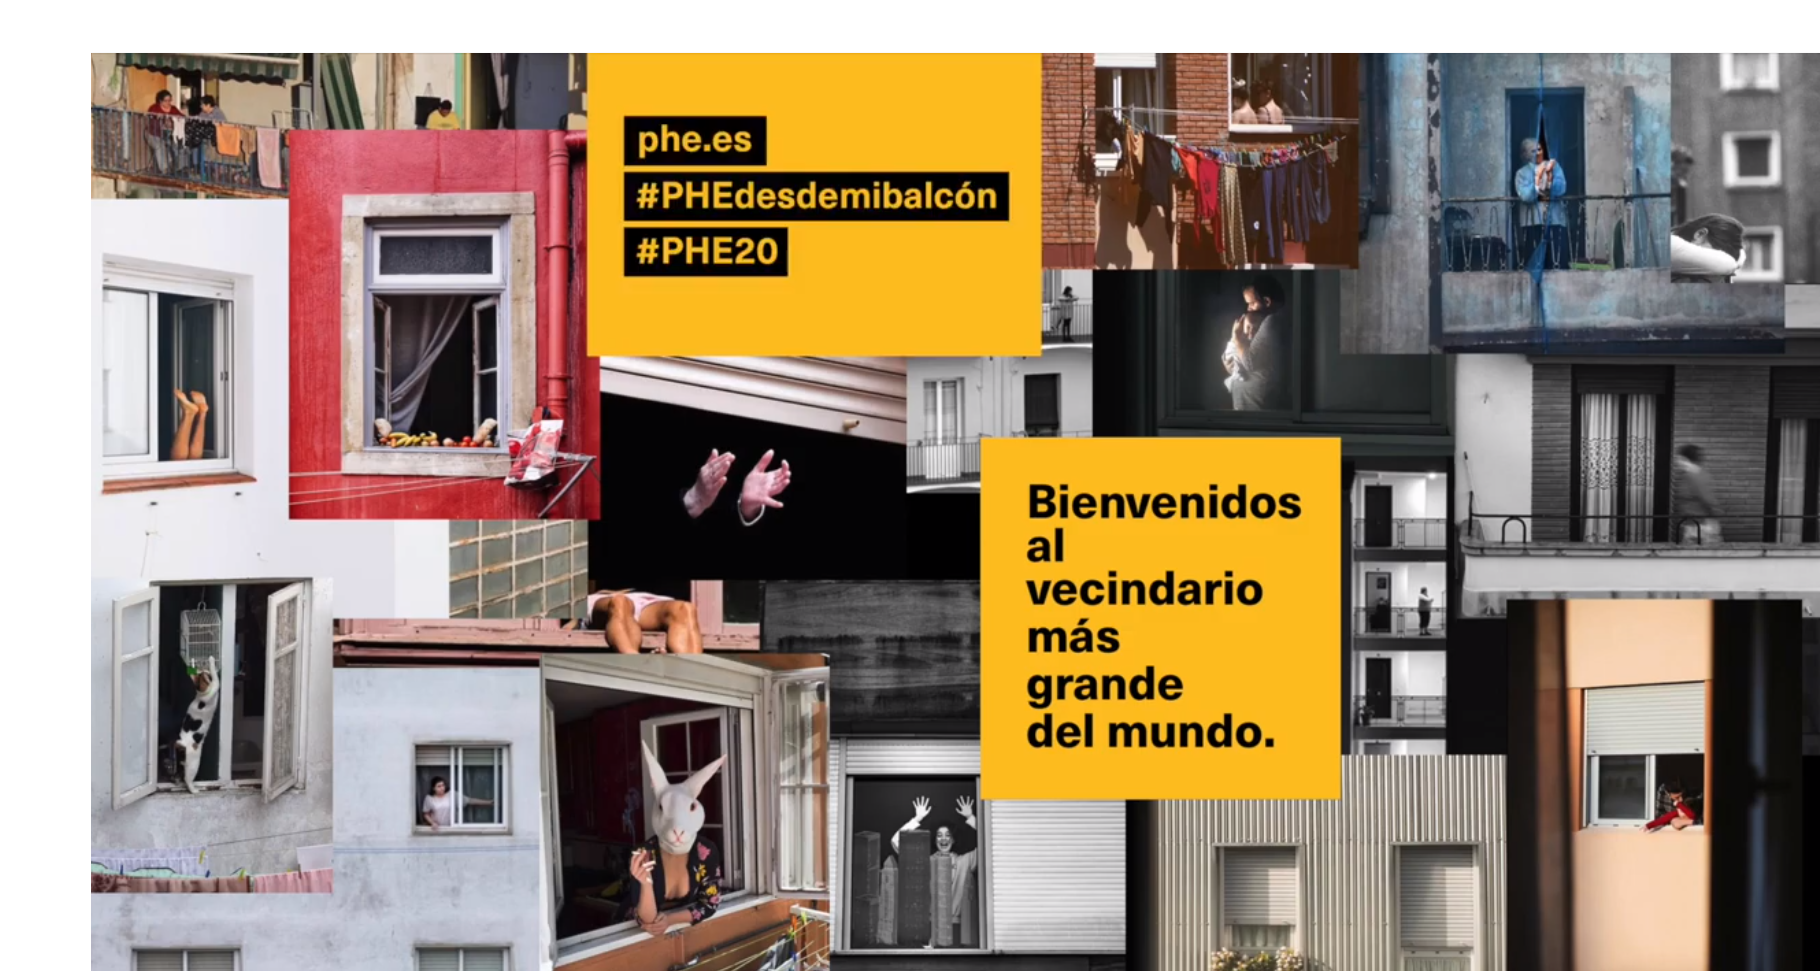 PHEdesdemibalcon, fotográfico , PhotoEspaña , El Laboratorio, programapublicidad